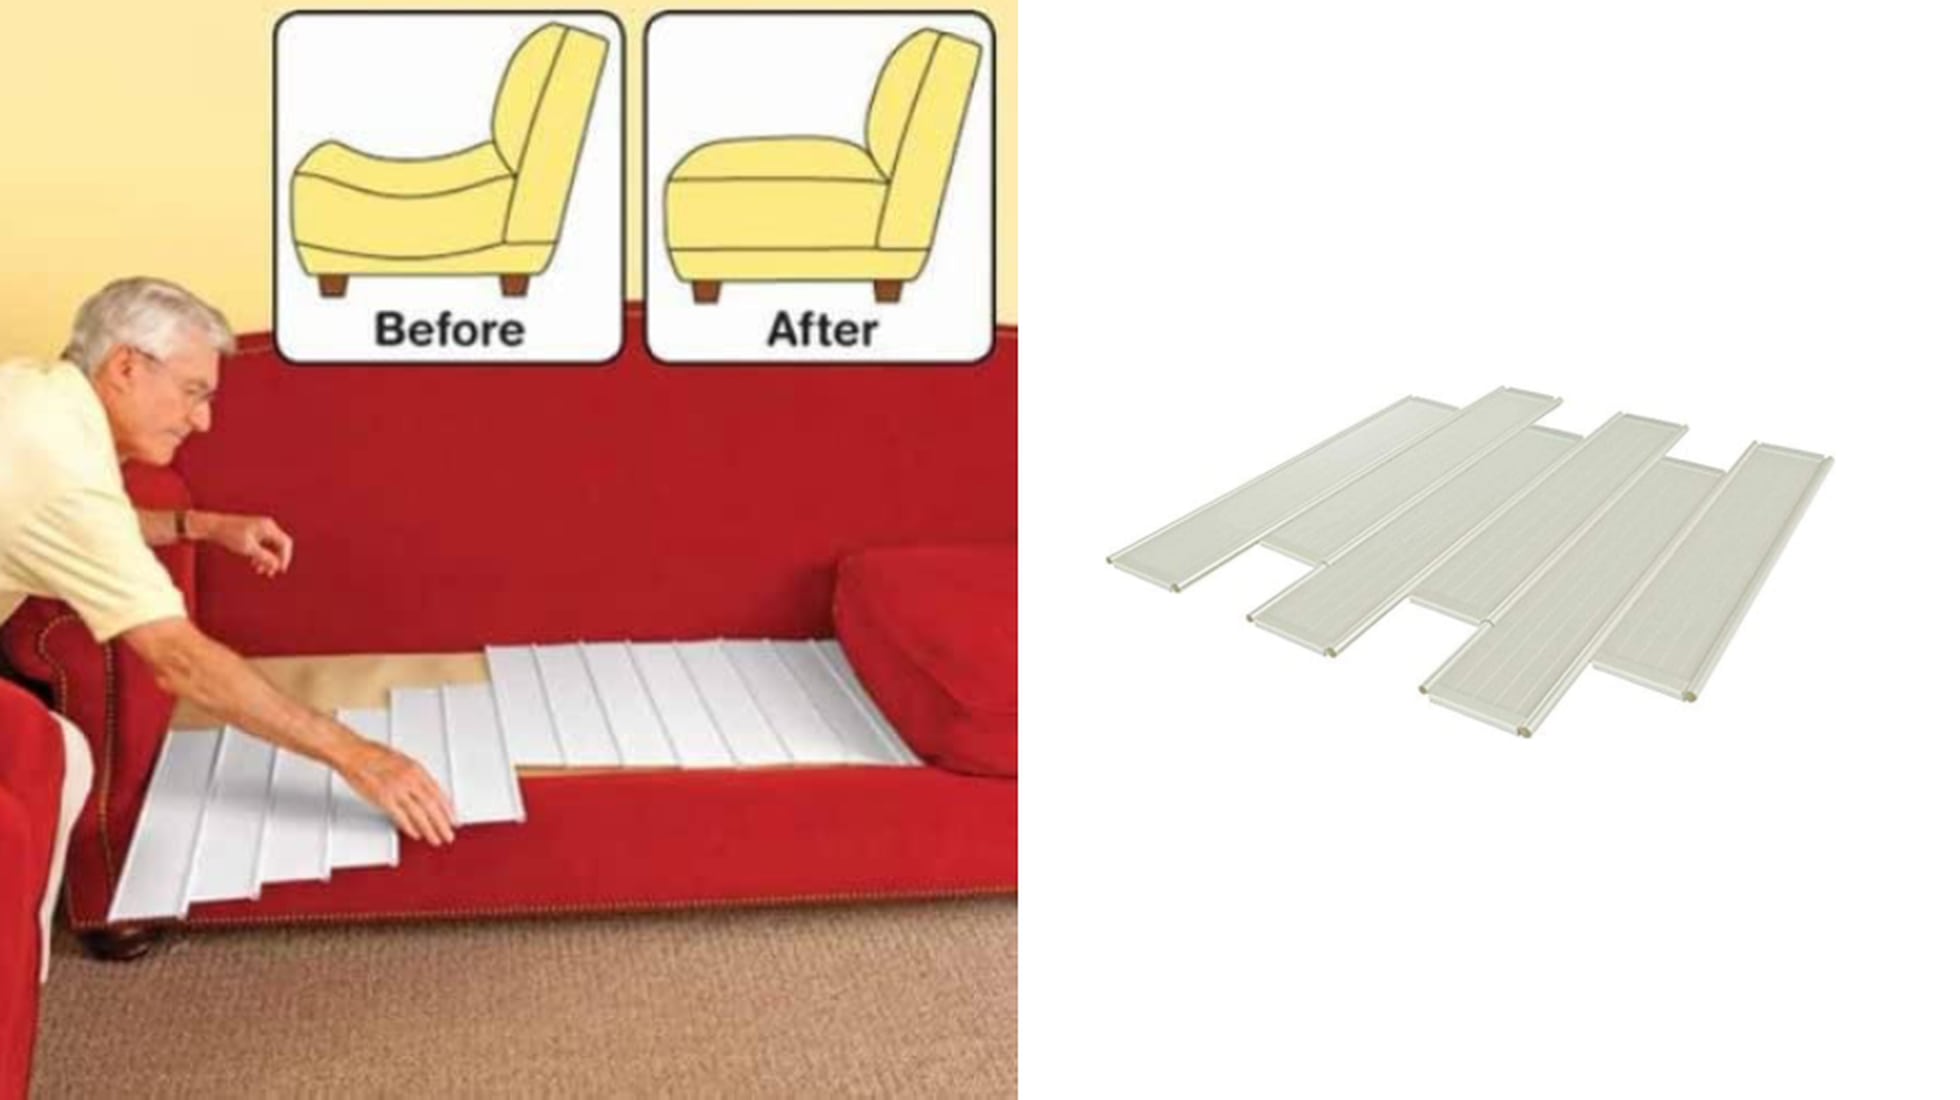 Soporte de cojín de sofá resistente para asiento caído de 20.5 x 67  pulgadas, grueso de madera maciza para sofá debajo de los cojines, fija y  protege